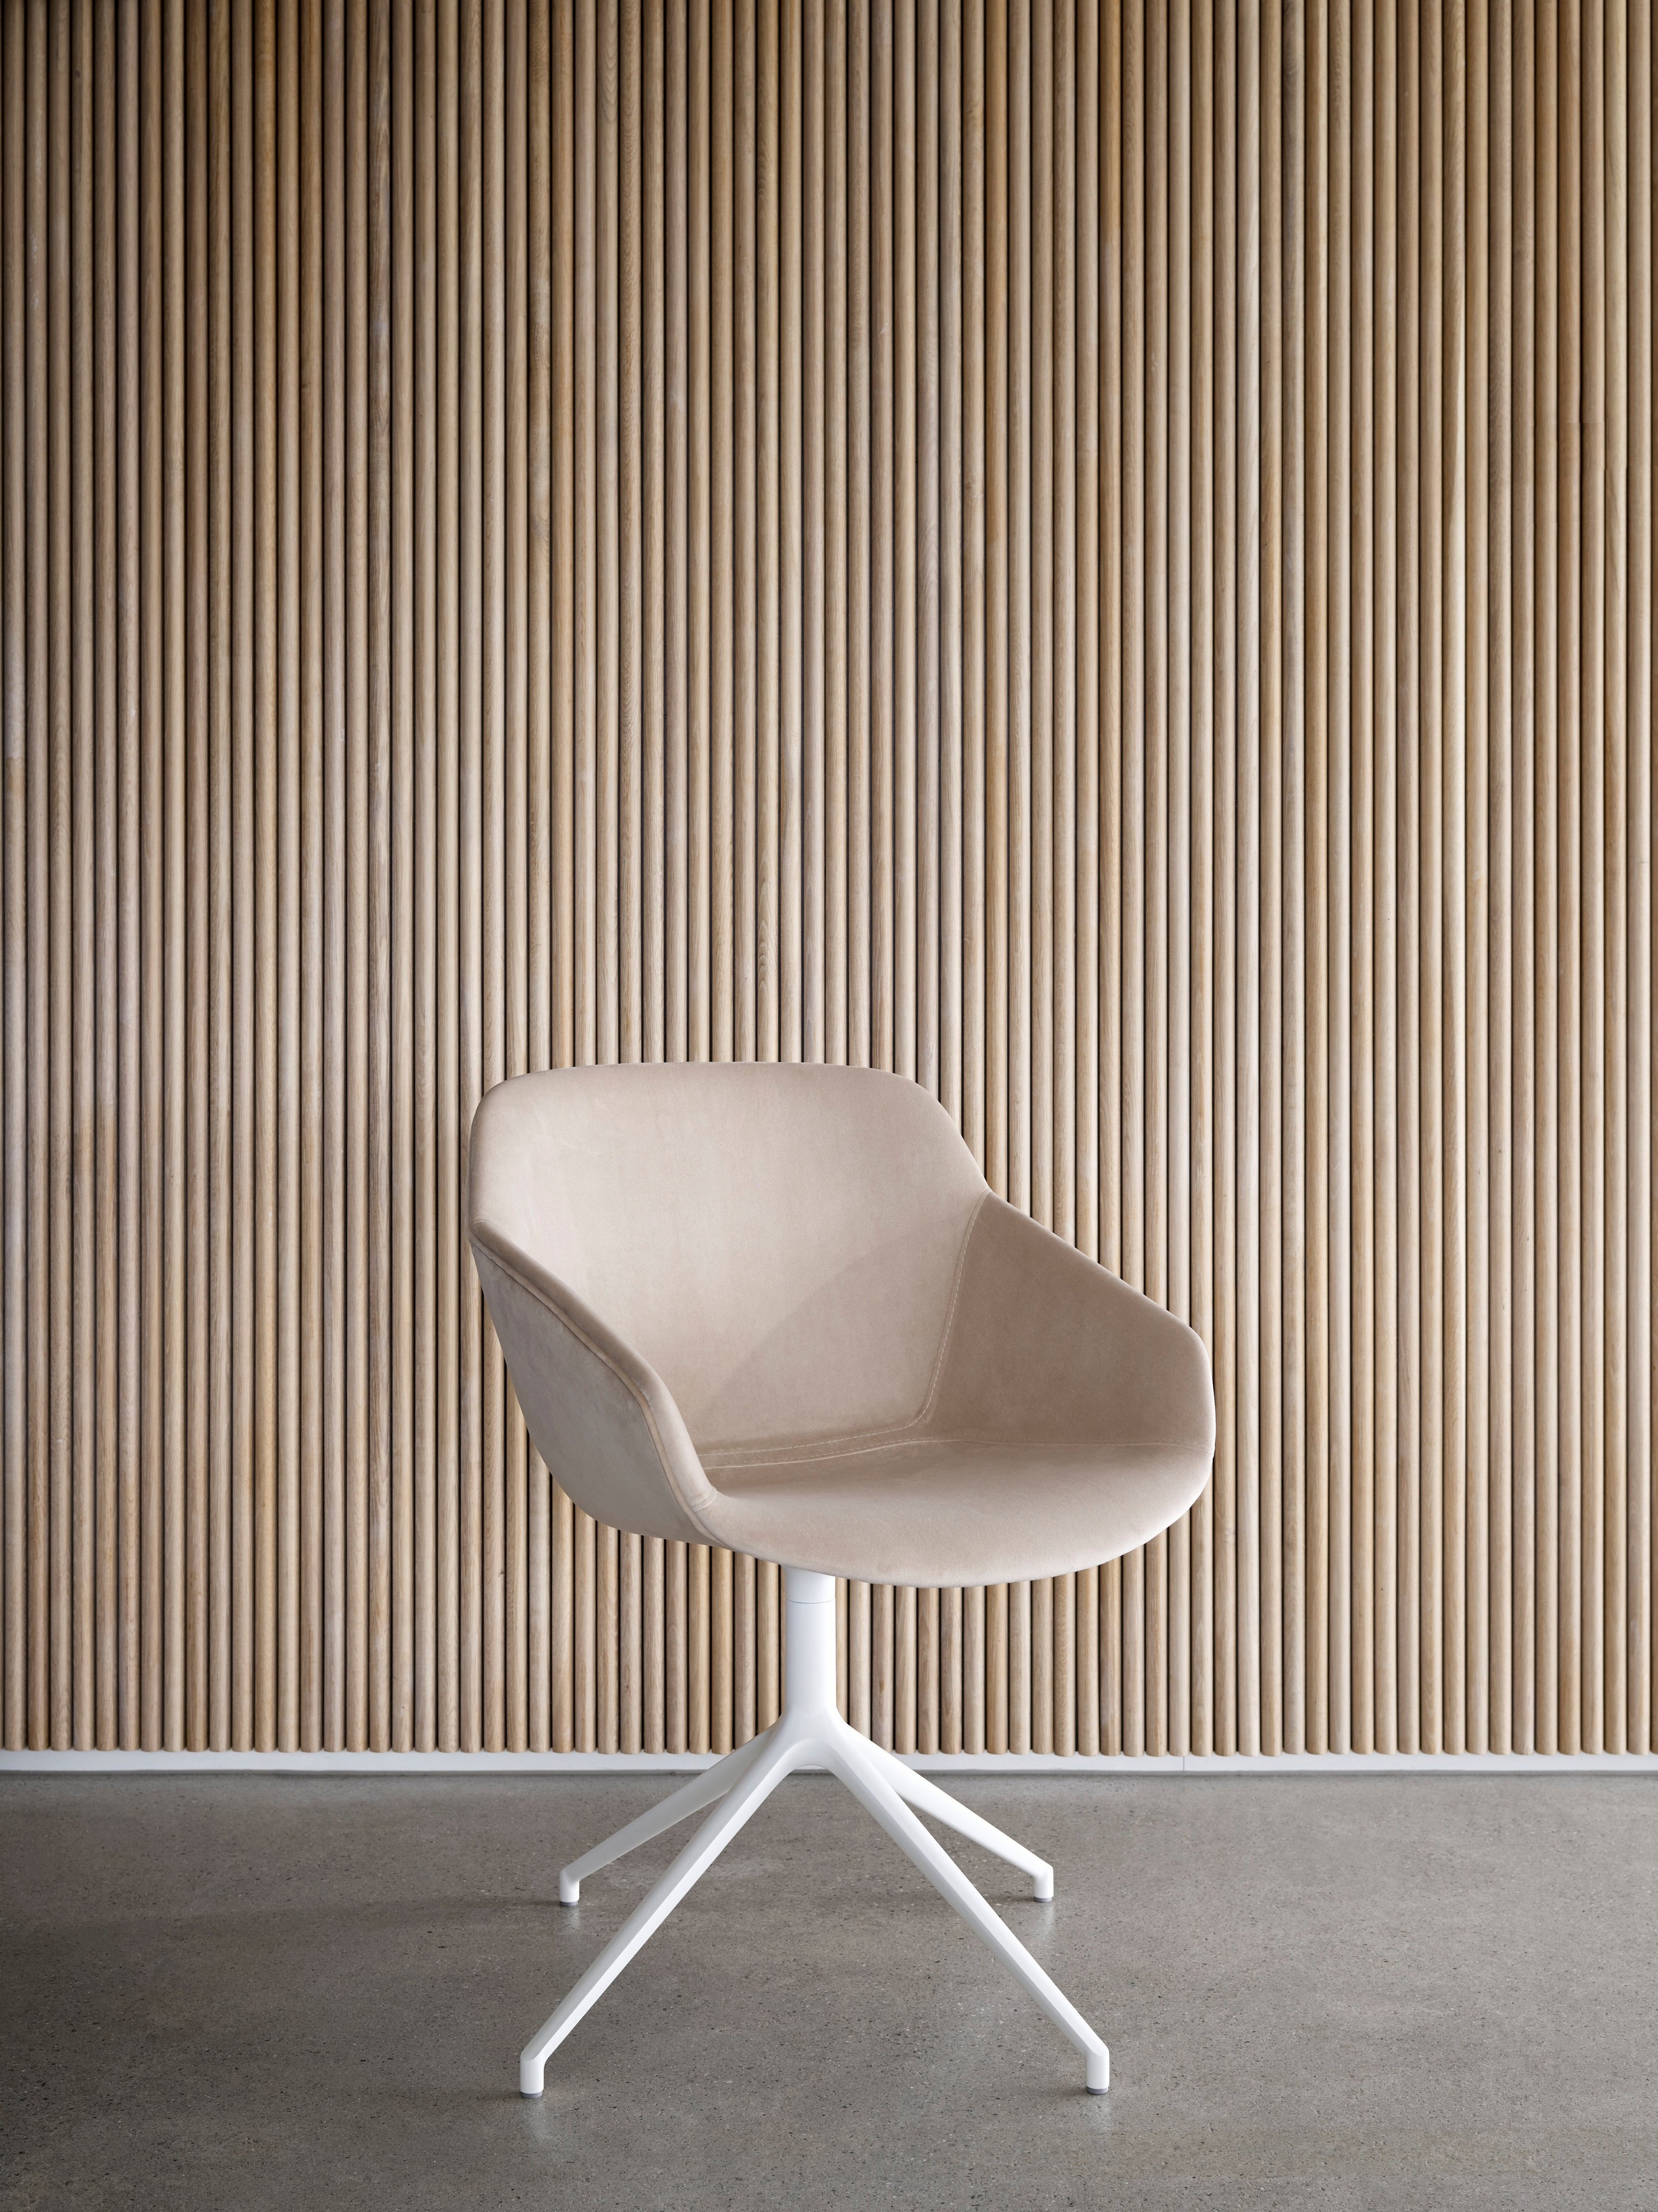 Silla beige con base blanca junto a una pared vertical de tablado de madera.